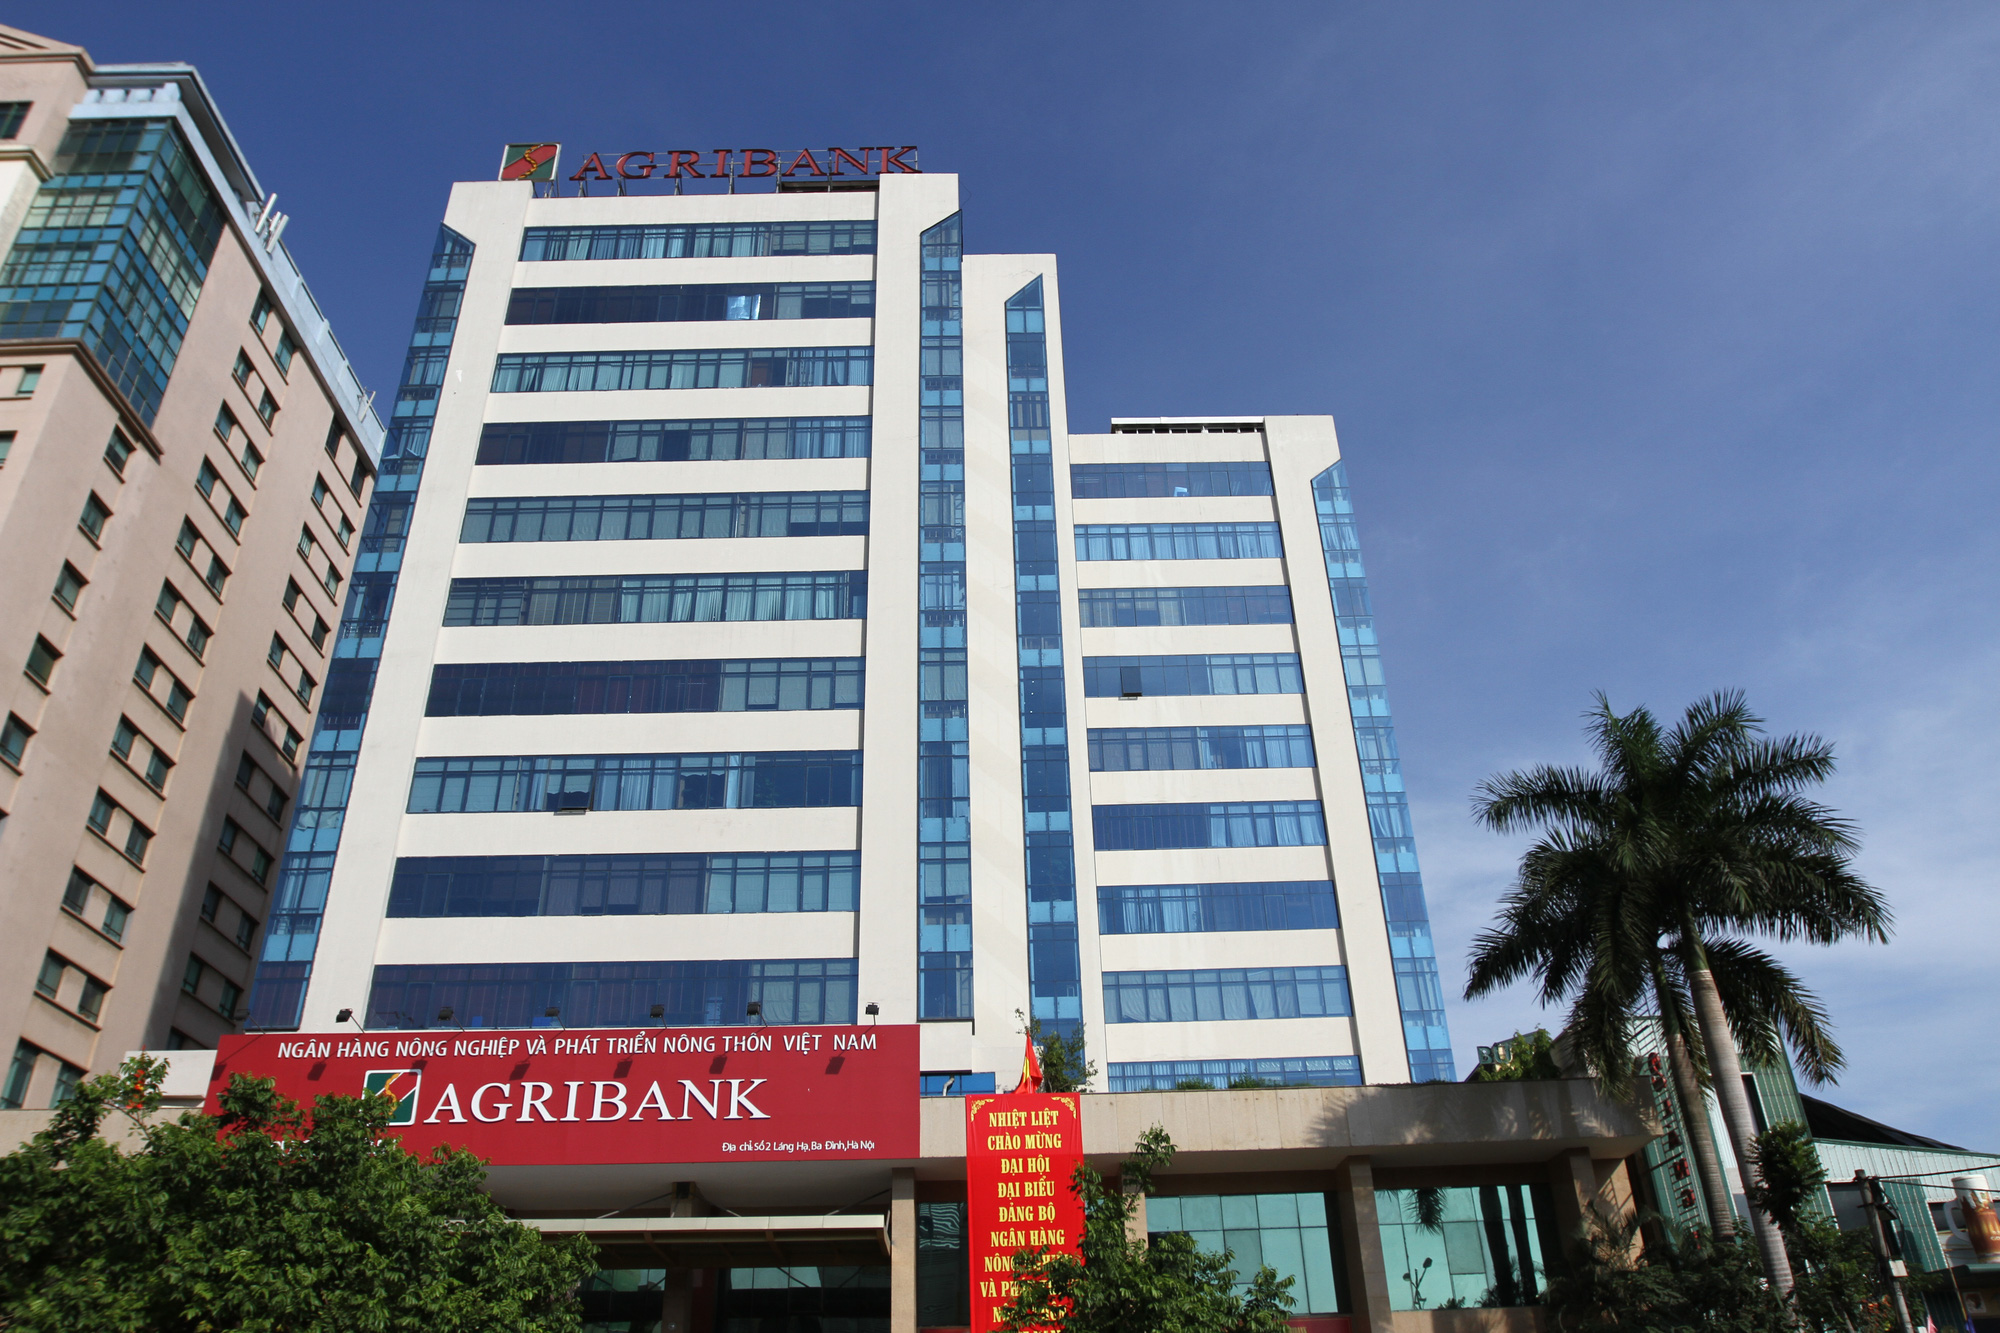 Agribank lọt Top 10 ngân hàng thương mại Việt Nam uy tín năm 2020 - Ảnh 1.